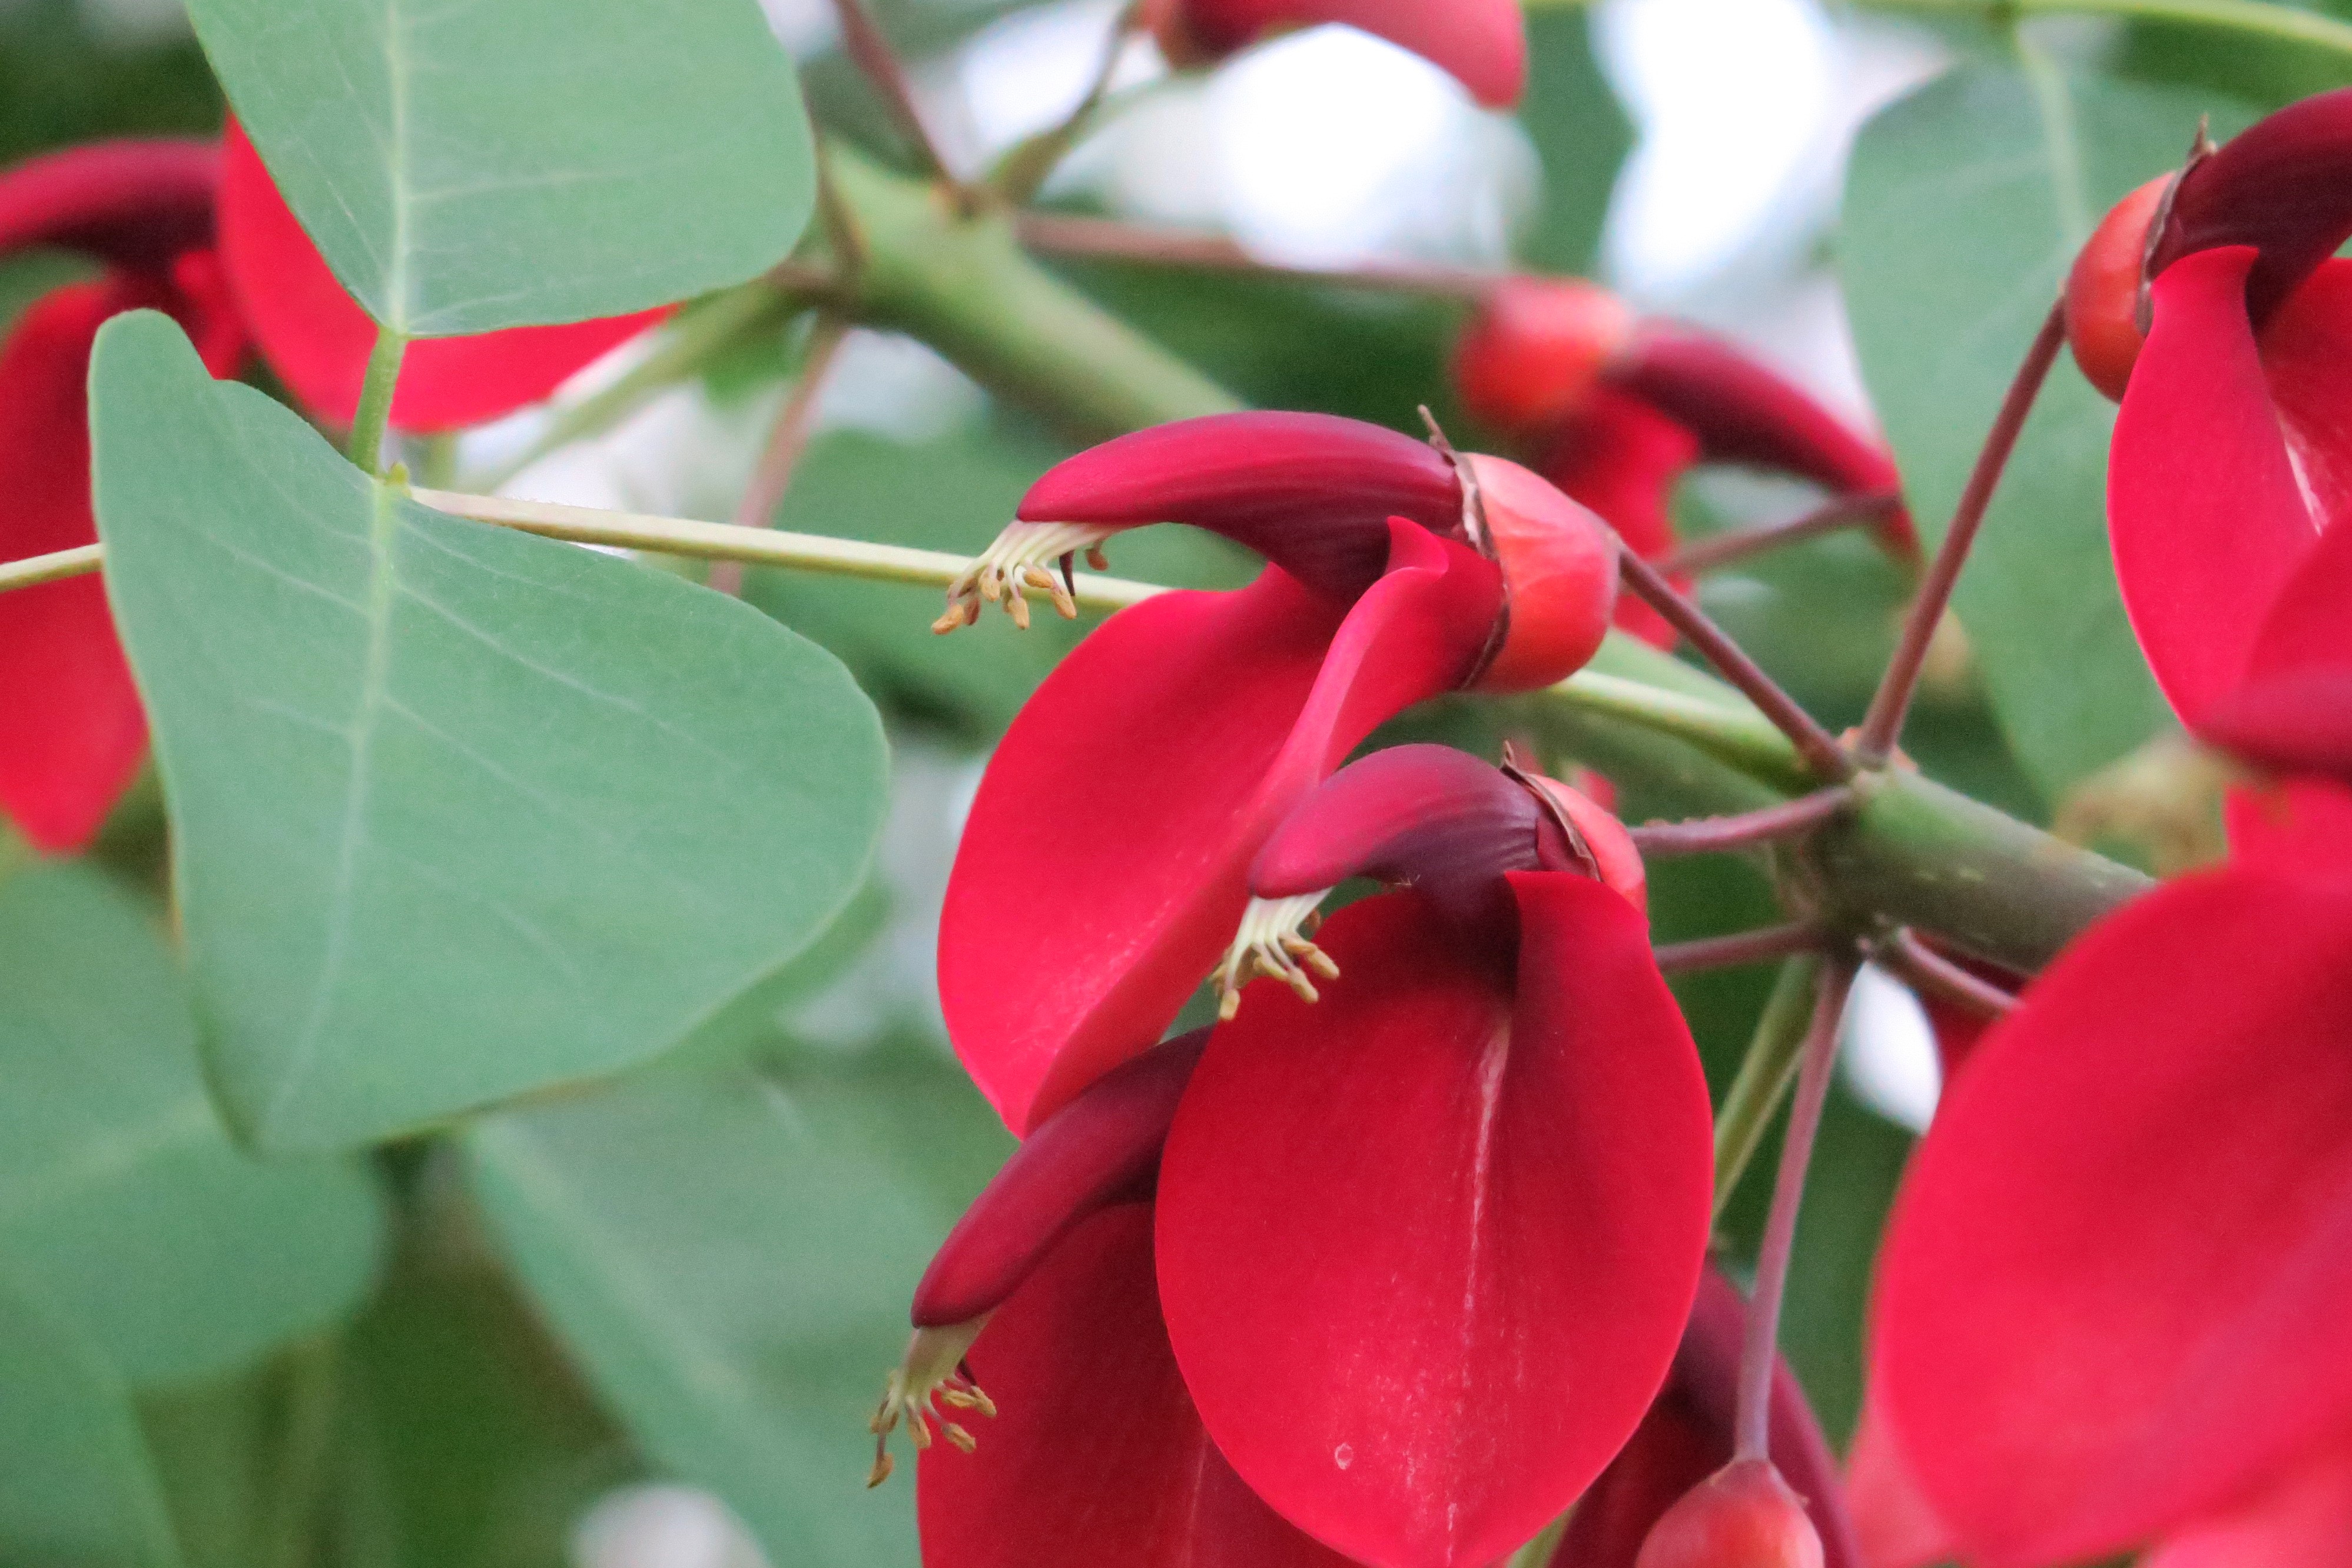 広島市森林公園こんちゅう館 パピヨンドームでカイコウズ アメリカデイゴ が咲き始めました 大きく赤い花 を房状につけるのでドーム内でとてもよく目立ちます その派手な見た目に反して 花はチョウ達には不人気です 名前にデイゴとありますが 沖縄県の